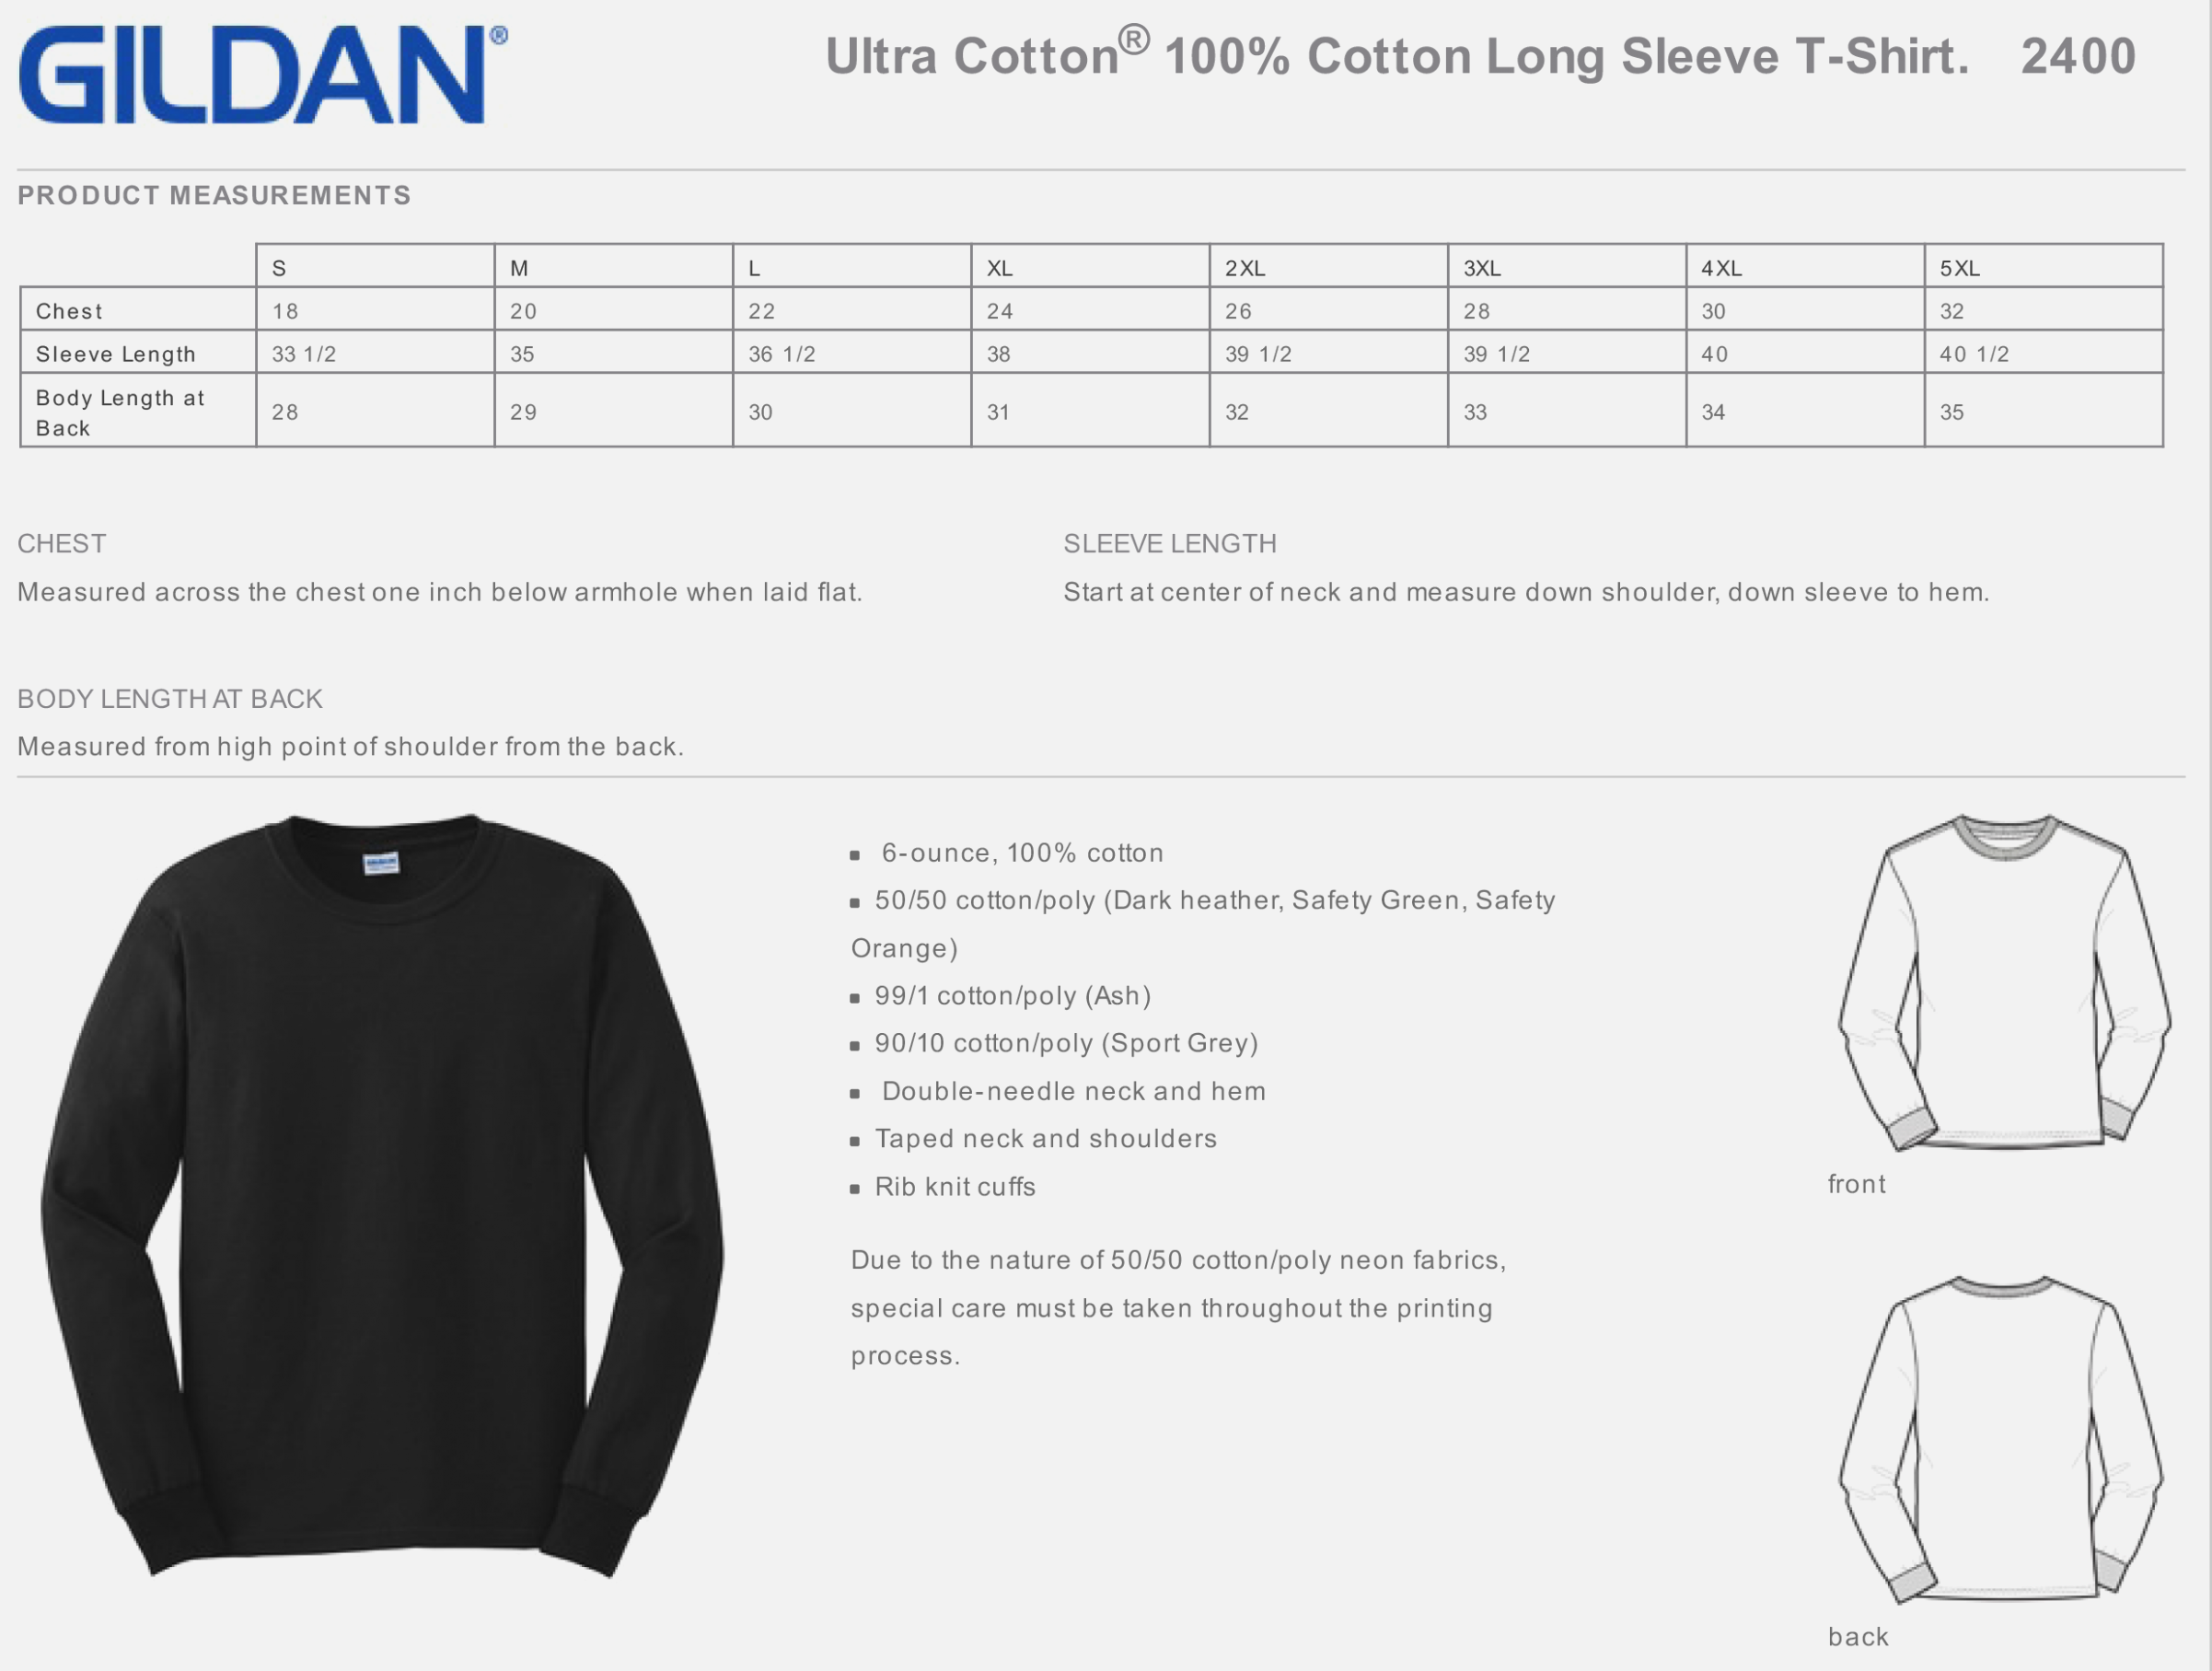 Gildan Long Sleeve Shirt Size Chart